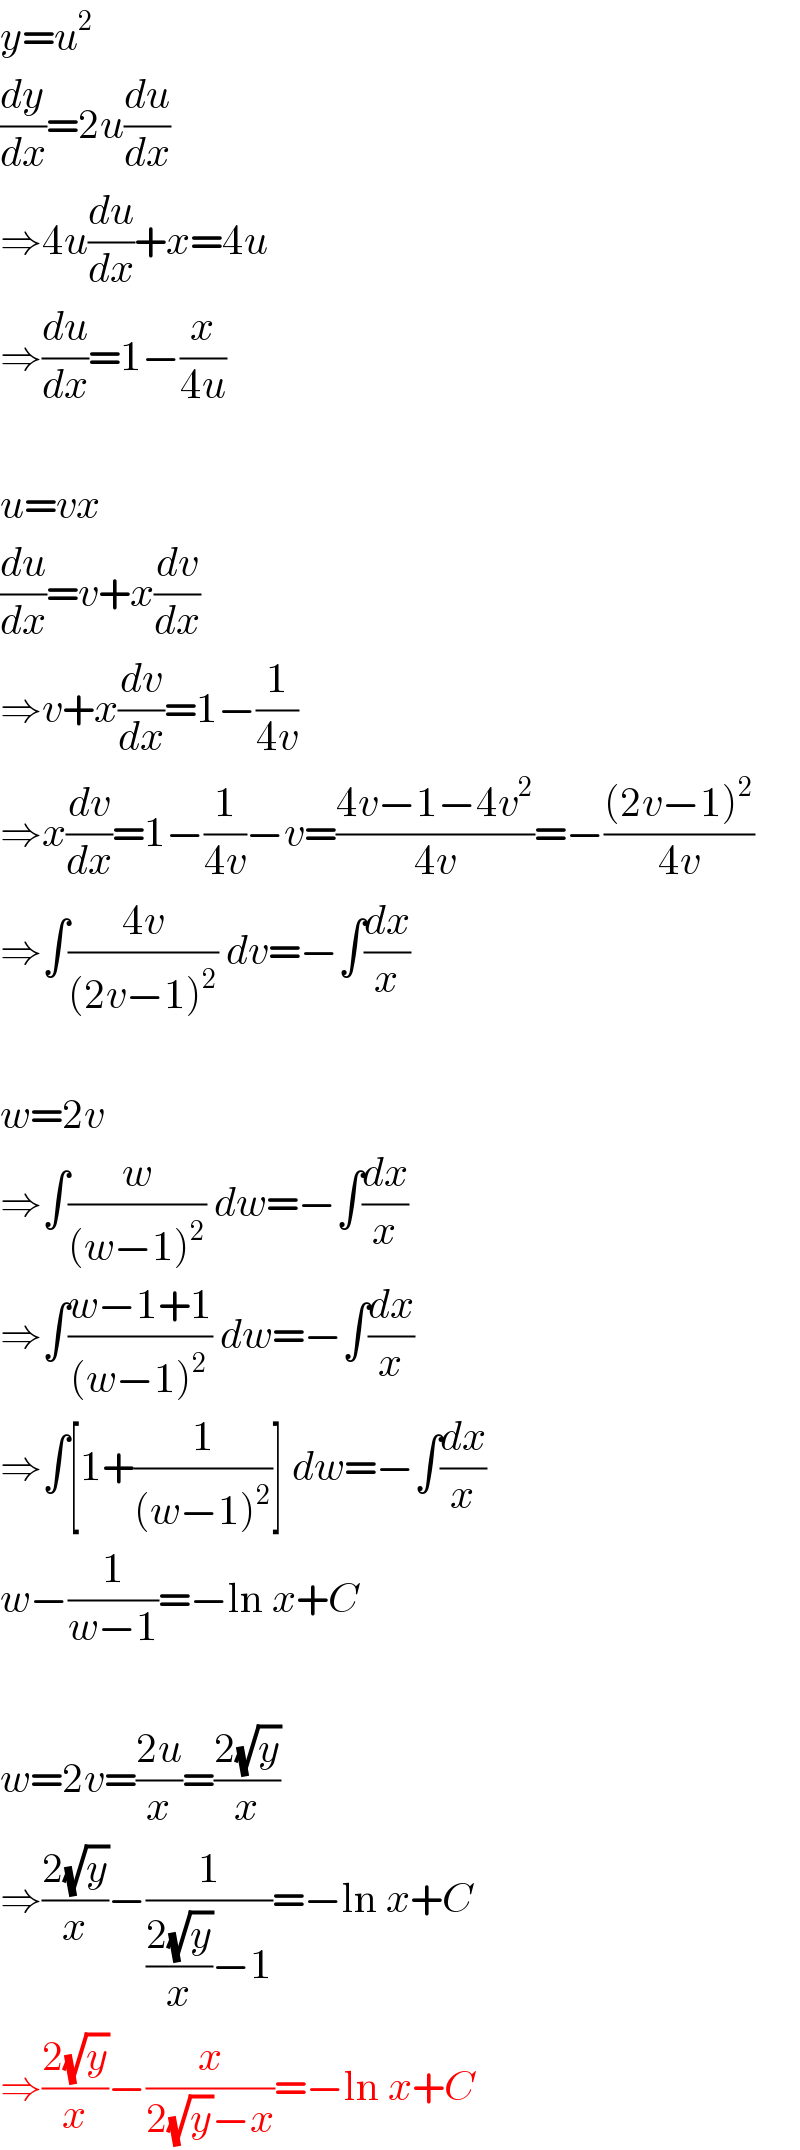 y=u^2   (dy/dx)=2u(du/dx)  ⇒4u(du/dx)+x=4u  ⇒(du/dx)=1−(x/(4u))    u=vx  (du/dx)=v+x(dv/dx)  ⇒v+x(dv/dx)=1−(1/(4v))  ⇒x(dv/dx)=1−(1/(4v))−v=((4v−1−4v^2 )/(4v))=−(((2v−1)^2 )/(4v))  ⇒∫((4v)/((2v−1)^2 )) dv=−∫(dx/x)    w=2v  ⇒∫(w/((w−1)^2 )) dw=−∫(dx/x)  ⇒∫((w−1+1)/((w−1)^2 )) dw=−∫(dx/x)  ⇒∫[1+(1/((w−1)^2 ))] dw=−∫(dx/x)  w−(1/(w−1))=−ln x+C    w=2v=((2u)/x)=((2(√y))/x)  ⇒((2(√y))/x)−(1/(((2(√y))/x)−1))=−ln x+C  ⇒((2(√y))/x)−(x/(2(√y)−x))=−ln x+C  